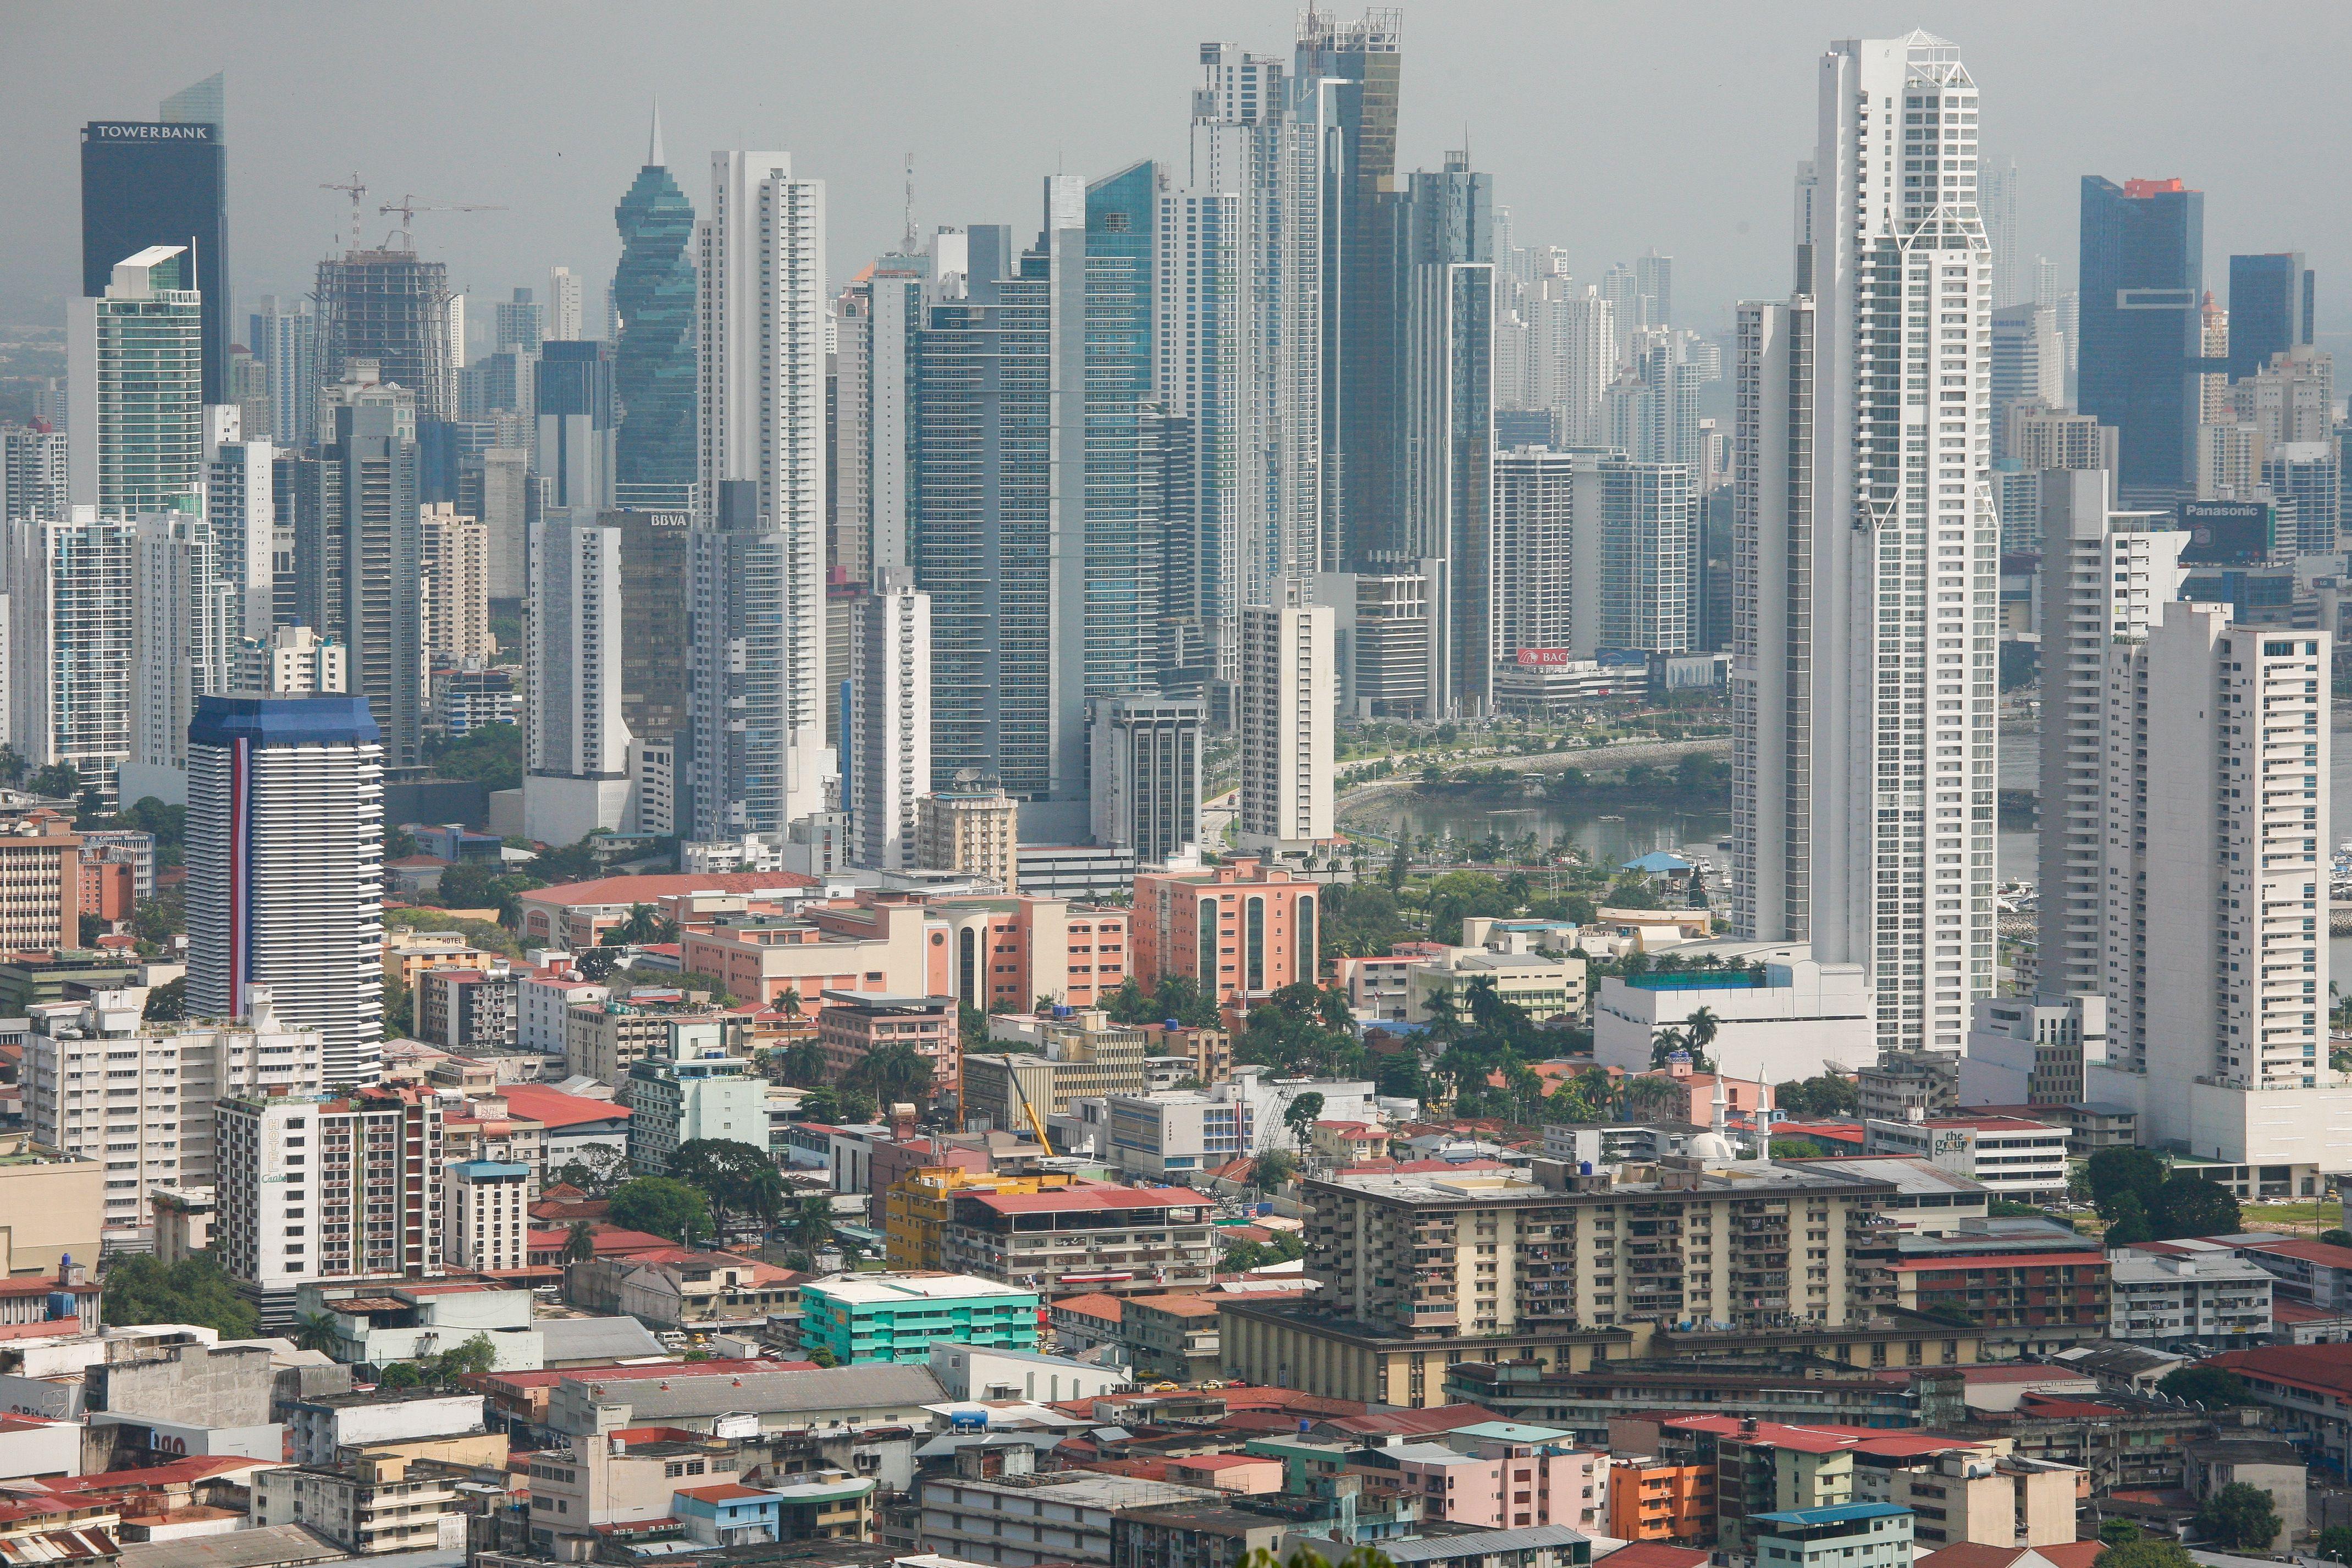 Panama City 4k Ultra HD Wallpaper. Background Imagex2852